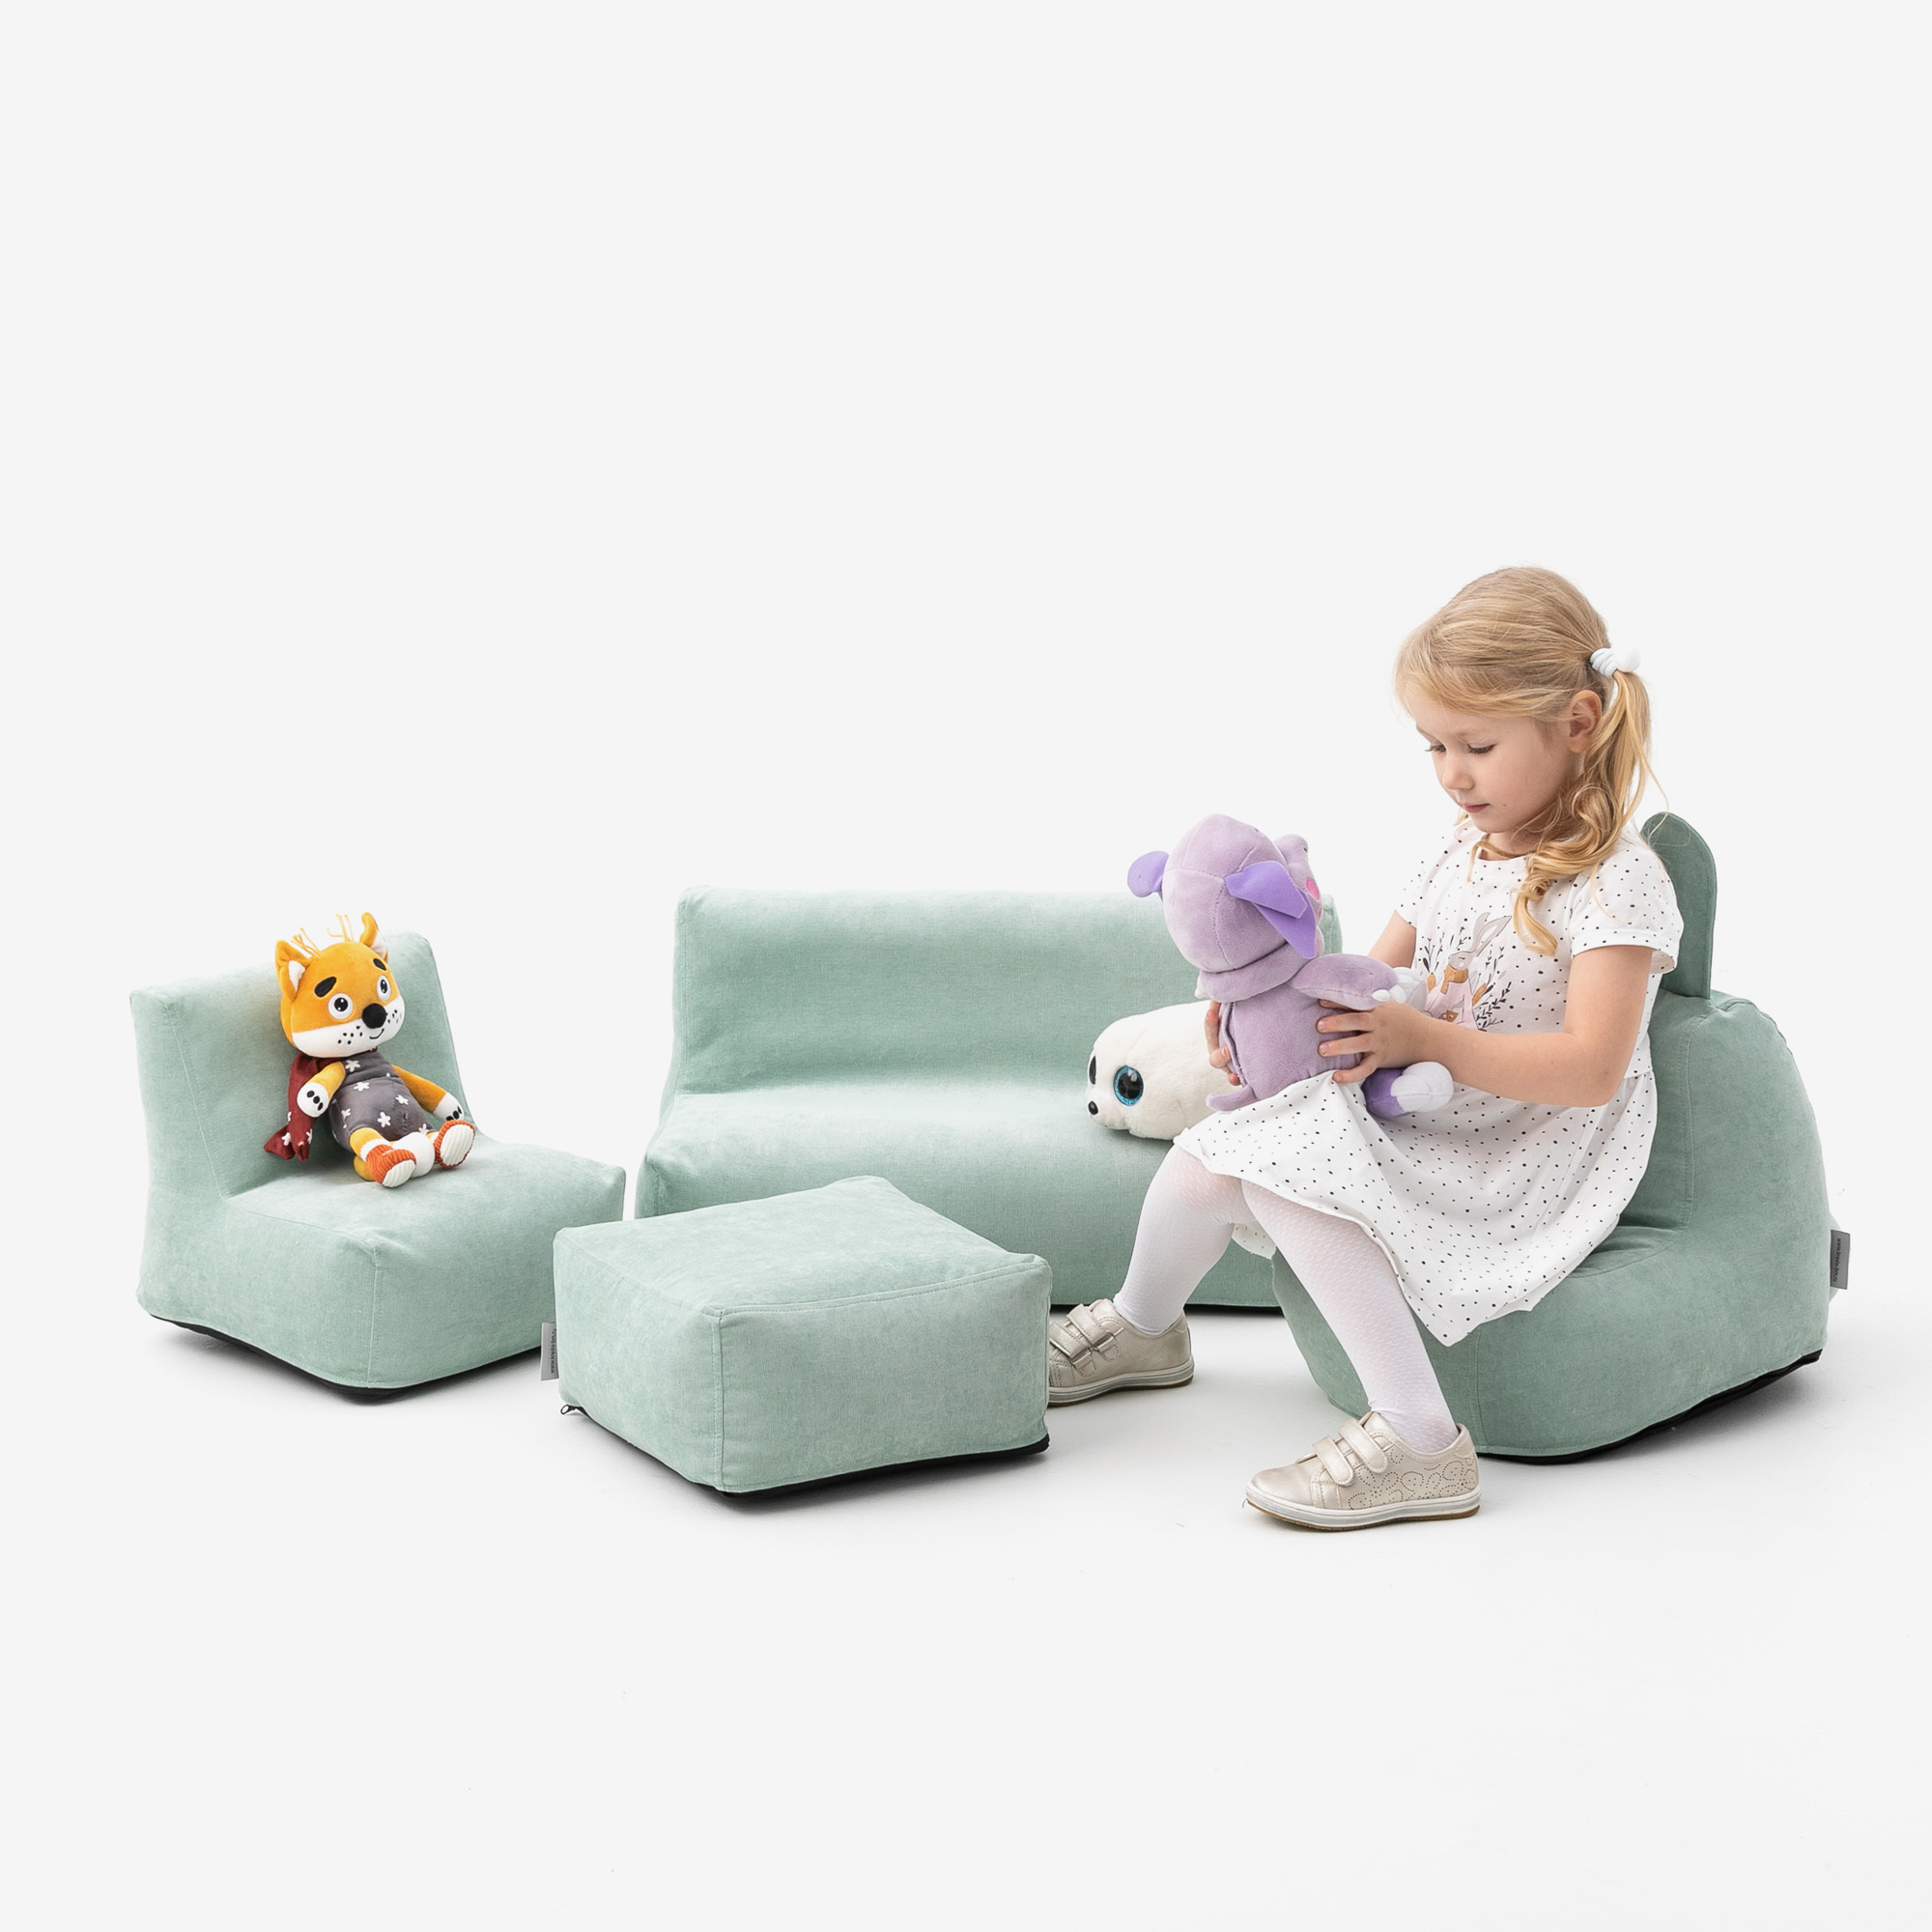 Детские диваны - Купить детский диван недорого